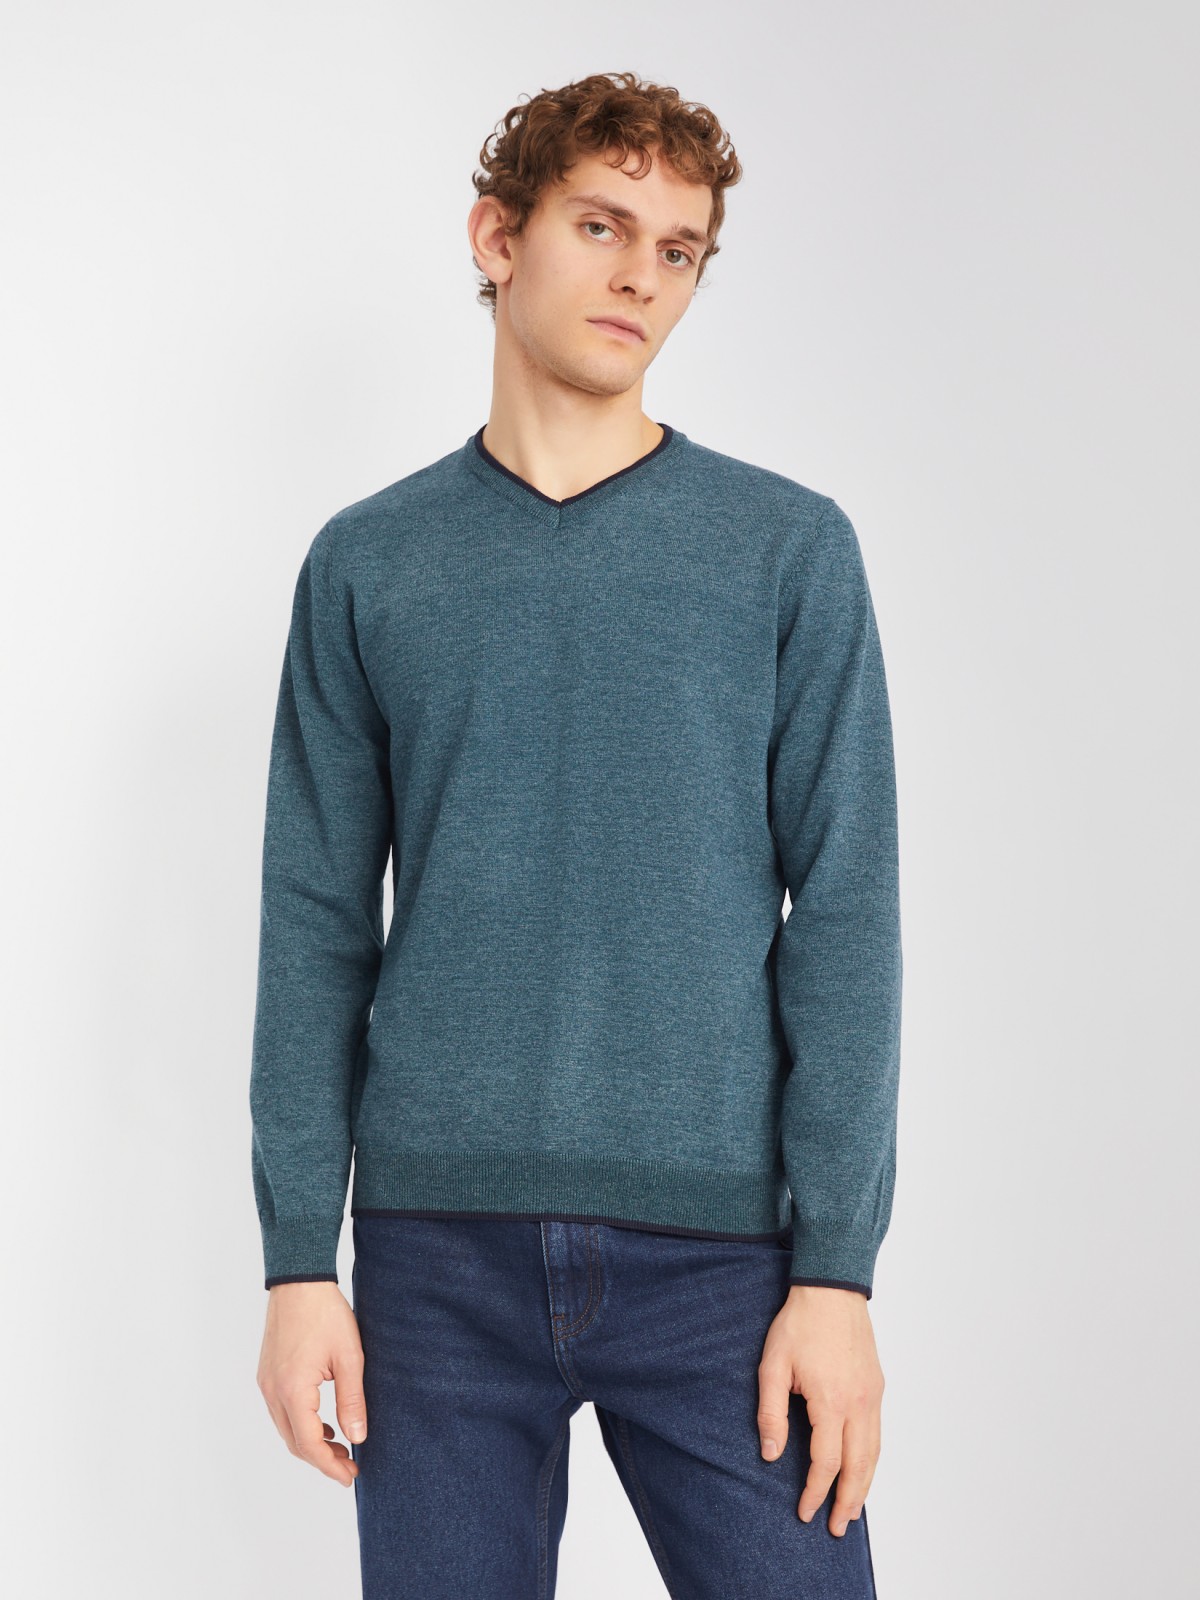 Тонкий трикотажный пуловер с длинным рукавом zolla 014116101082, цвет темно-бирюзовый, размер M - фото 1